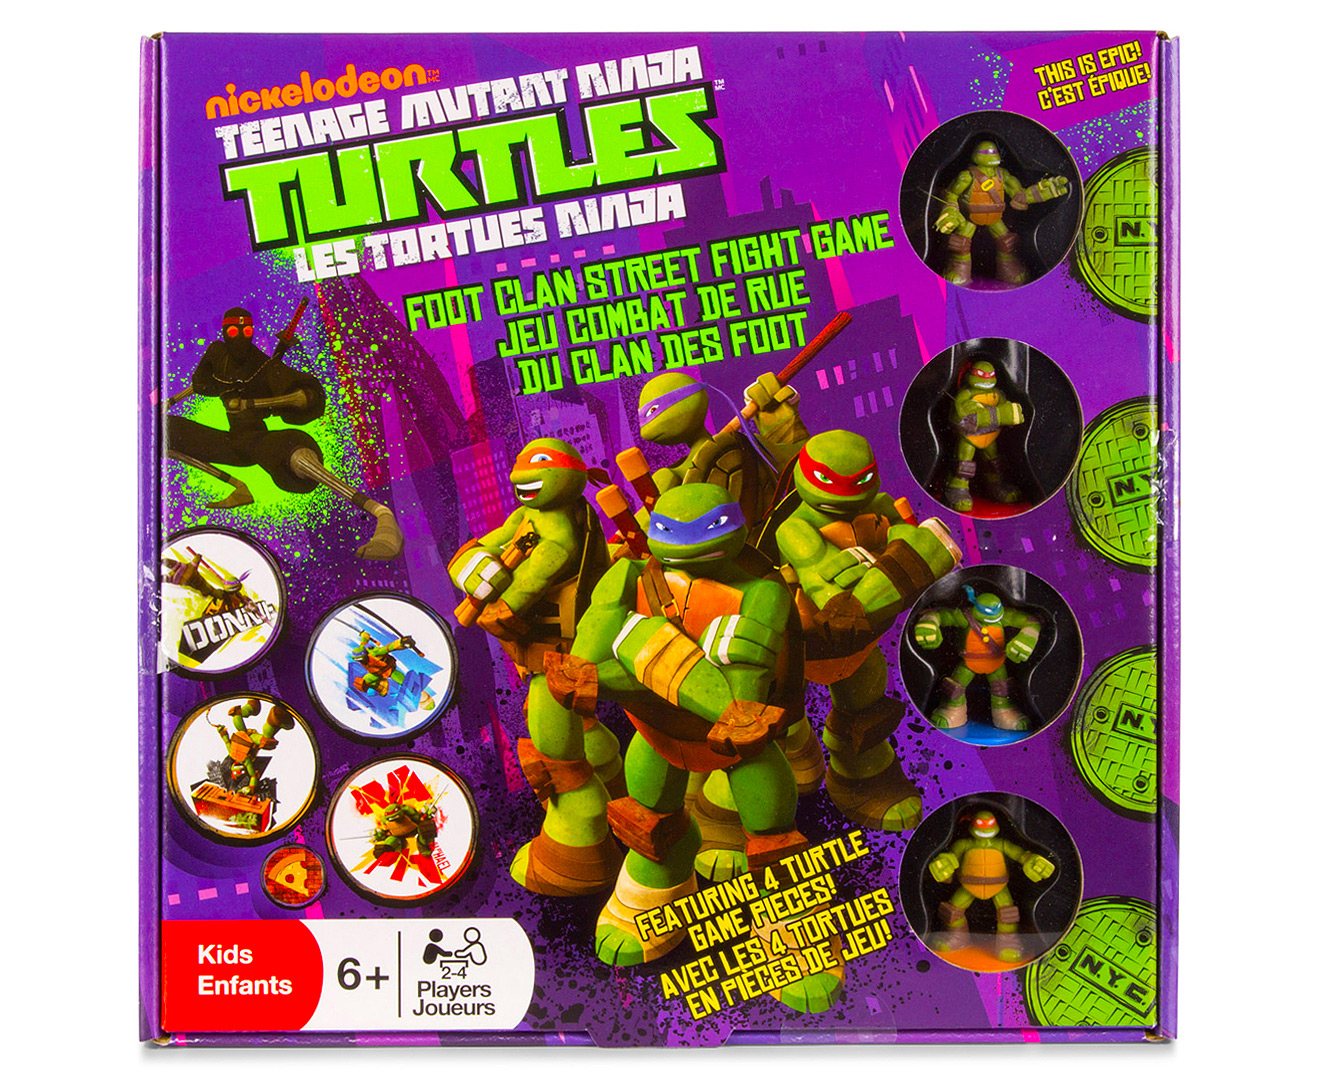 teenage mutant ninja turtles fighting game